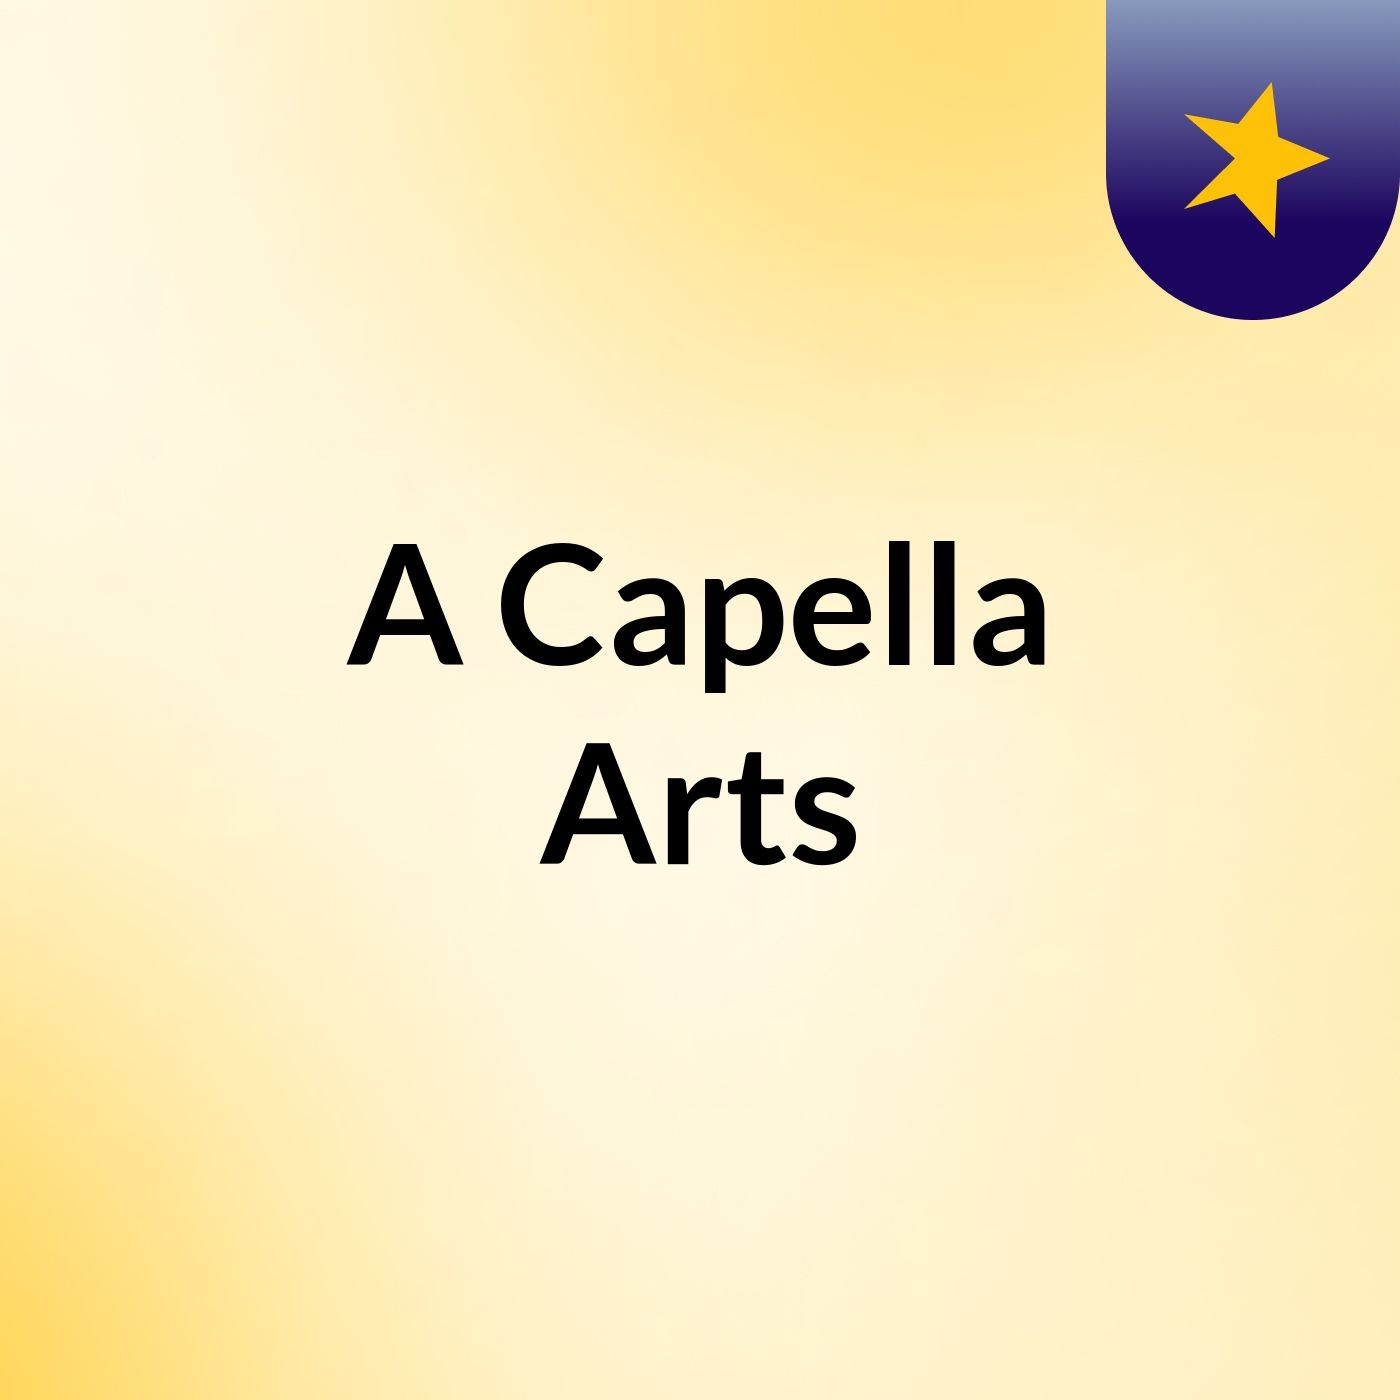 A Capella Arts